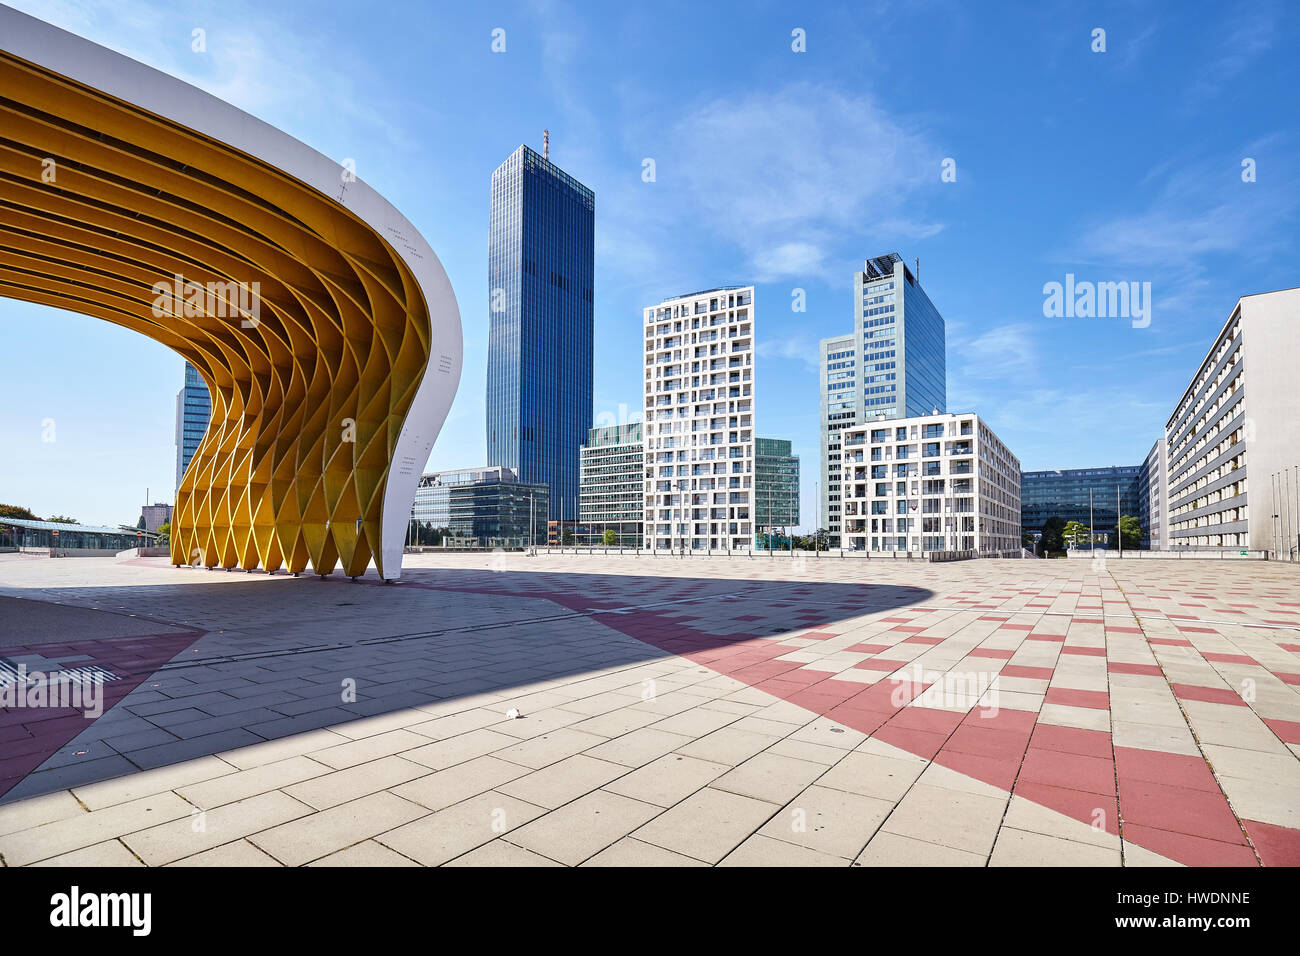 Vienne, Autriche - Août 14, 2016 : l'architecture moderne de Vienna Donau complexe sur une belle journée d'été. Banque D'Images